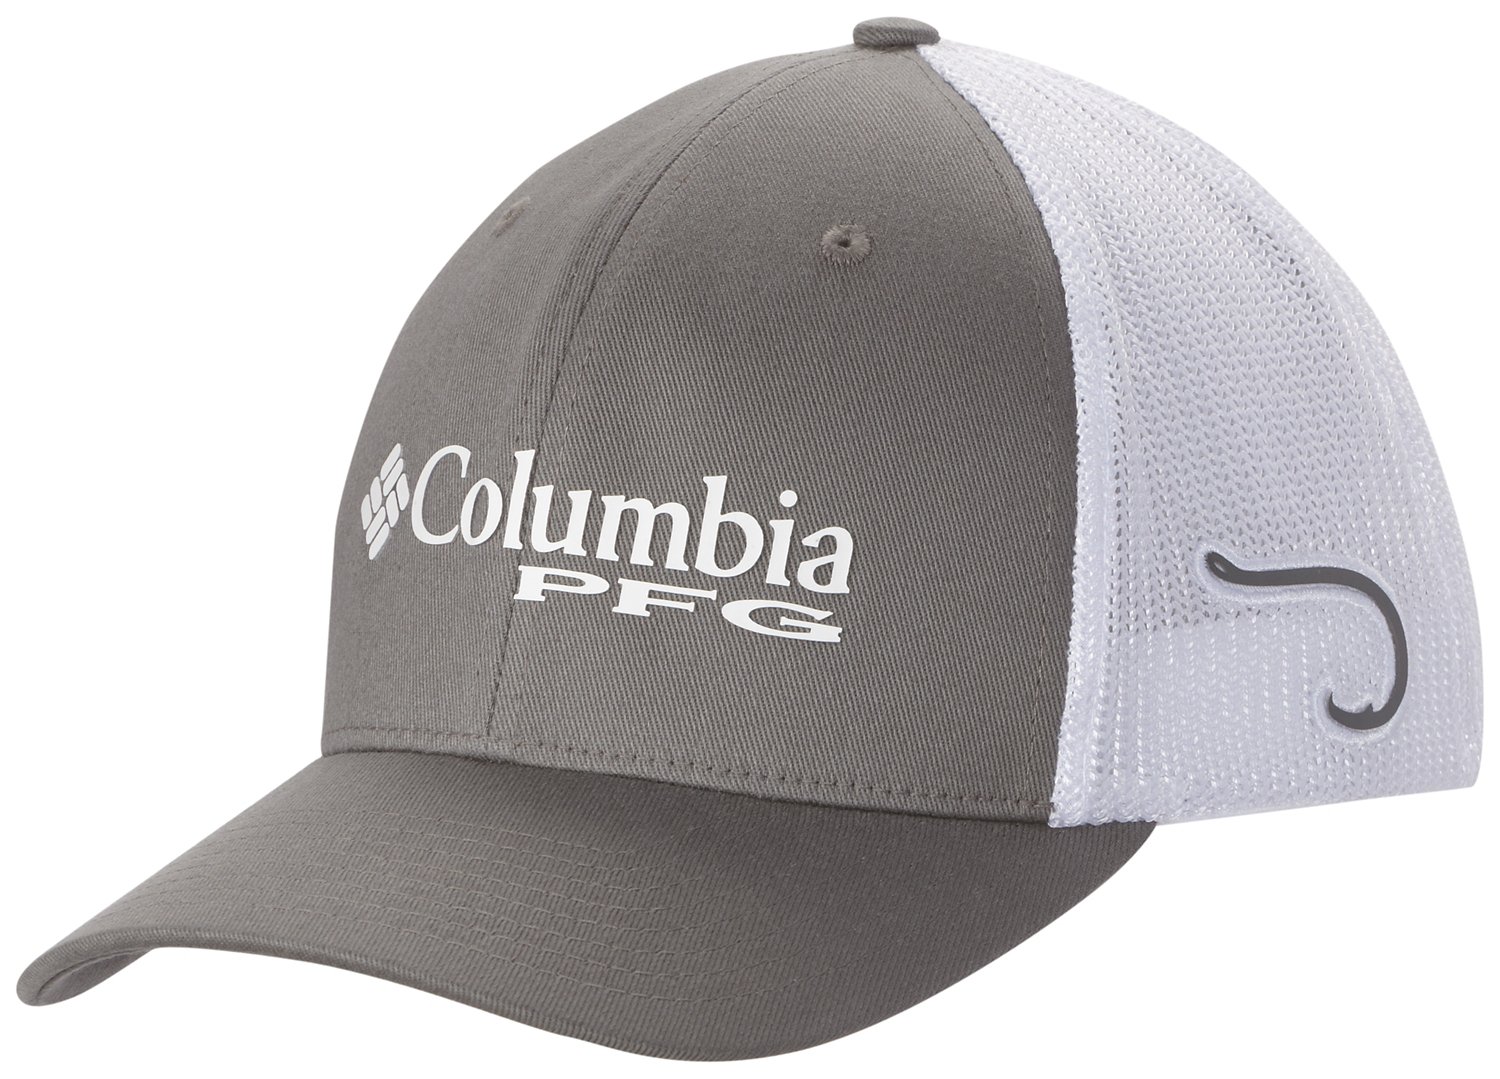 Columbia Men's Hats & Accessories